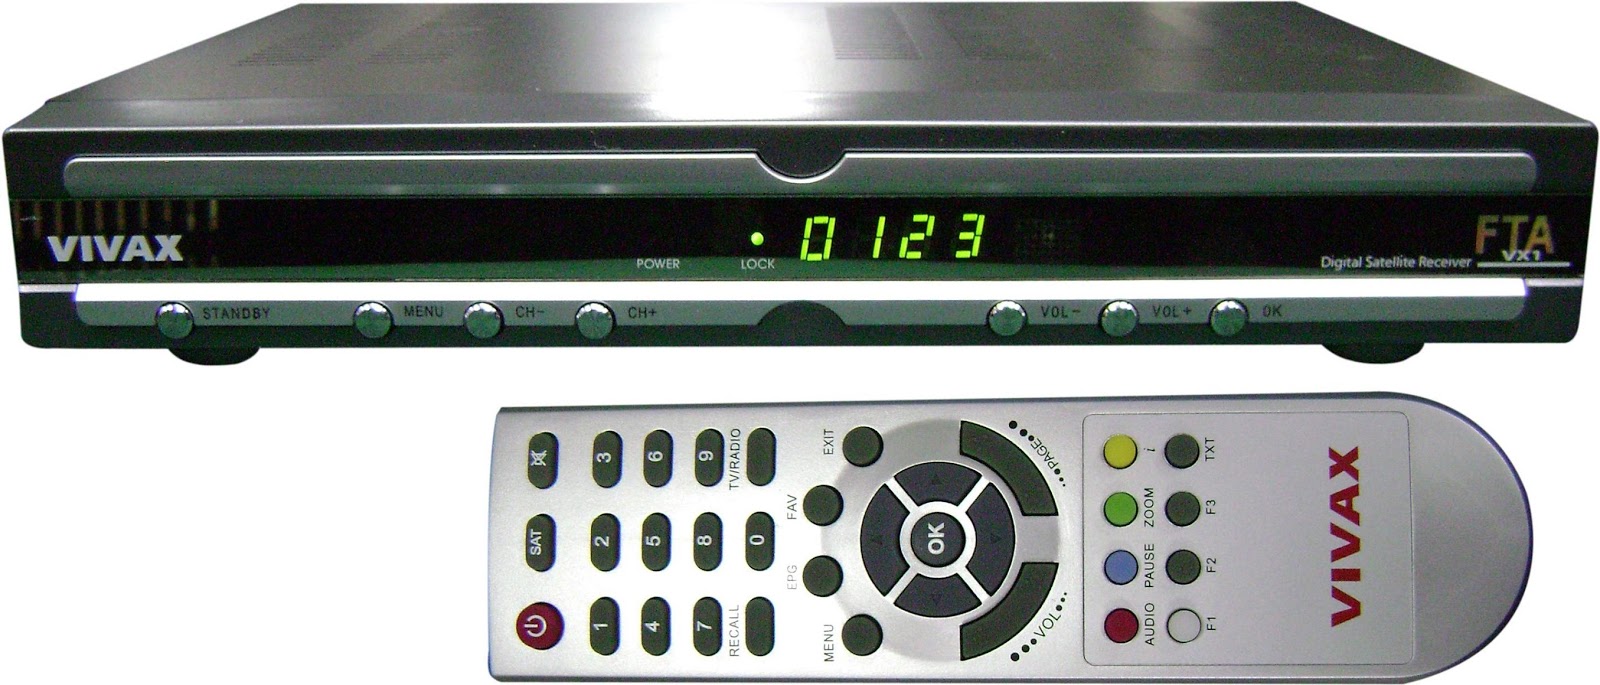 احدث ملف قنوات انجليزى vivax vx1 fta بتاريخ اليوم 10-2-2020  Eurostar-satellite-receiver-vx1-vivax-fta